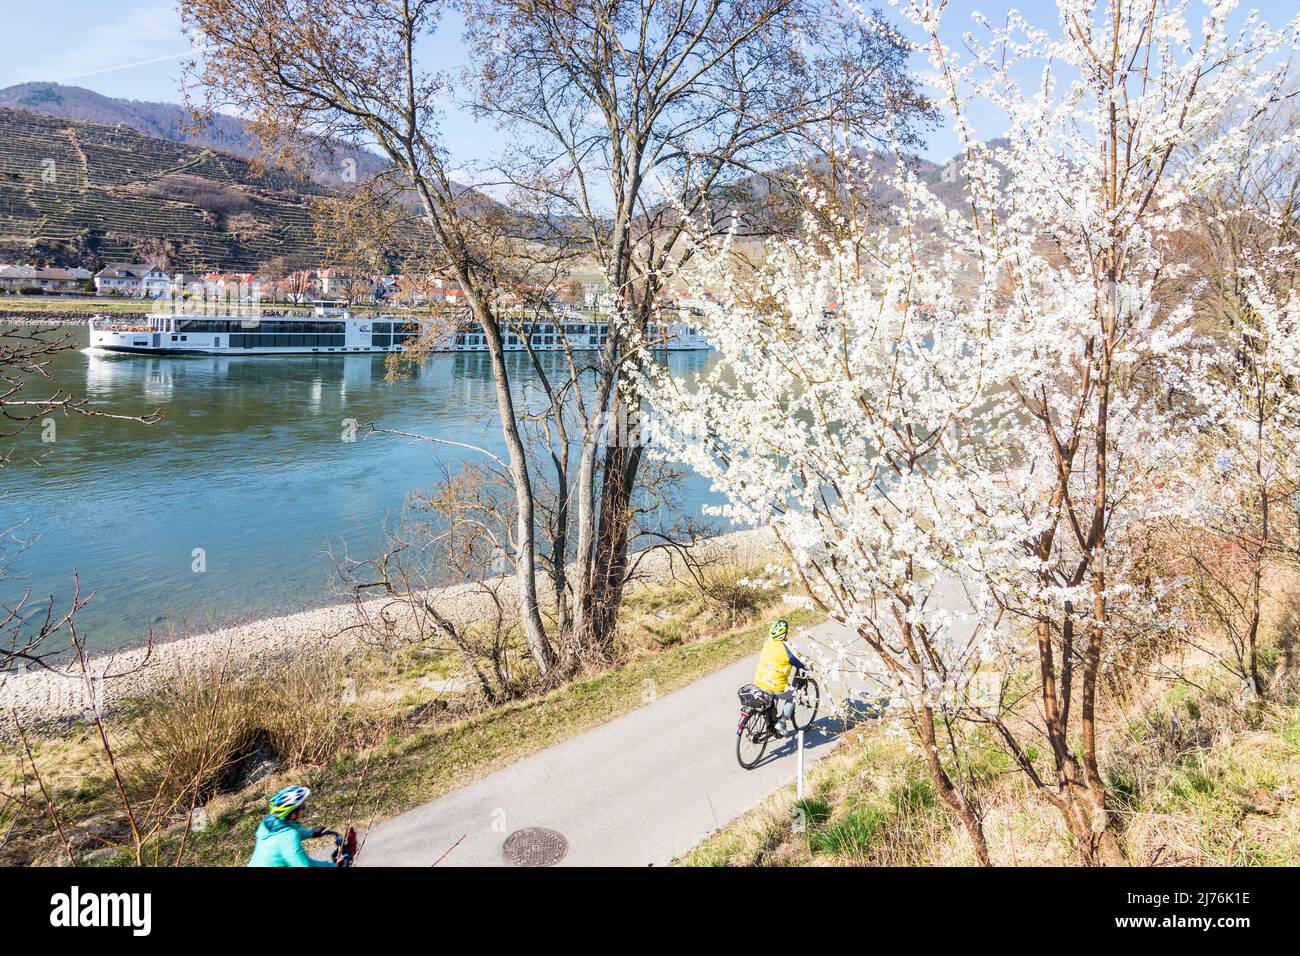 Spitz, fiume Donau, ciclisti a Donauradweg (percorso ciclabile Danubio), albero fiorito, vista a Spitz nella regione di Wachau, bassa Austria, Austria Foto Stock